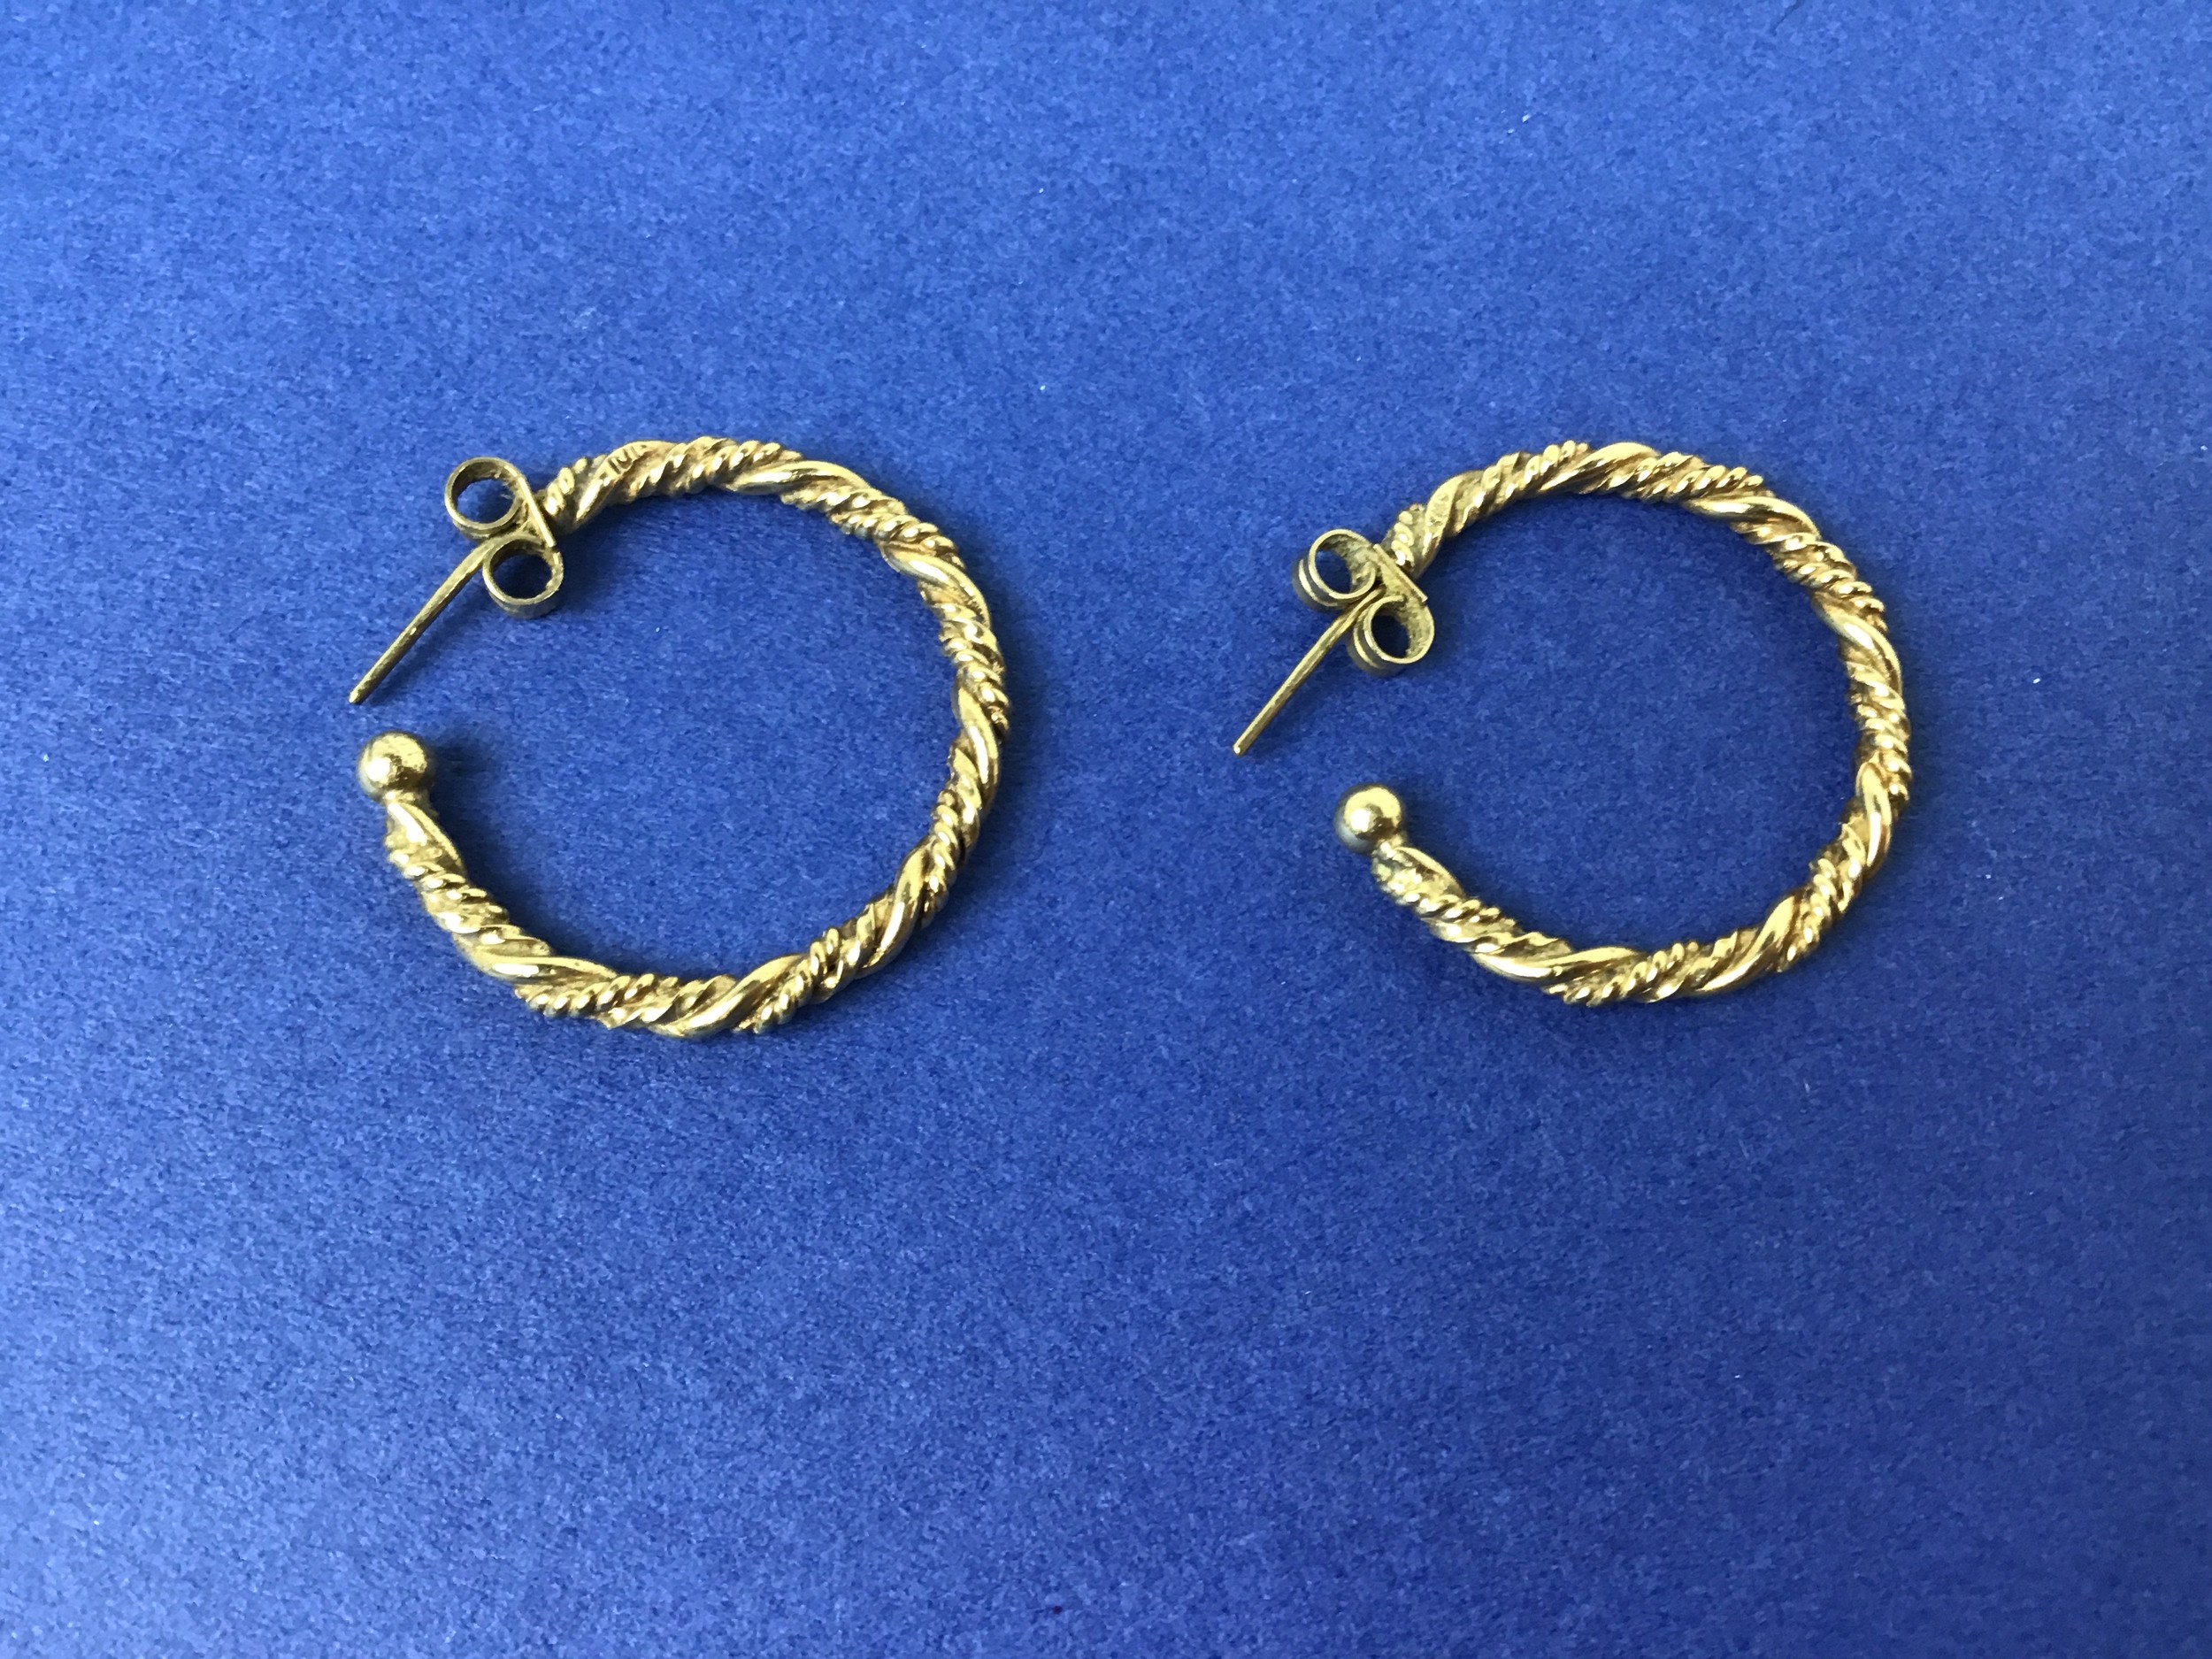 Pair of 9ct Gold Twisted Hoop Earrings - 5.36gms